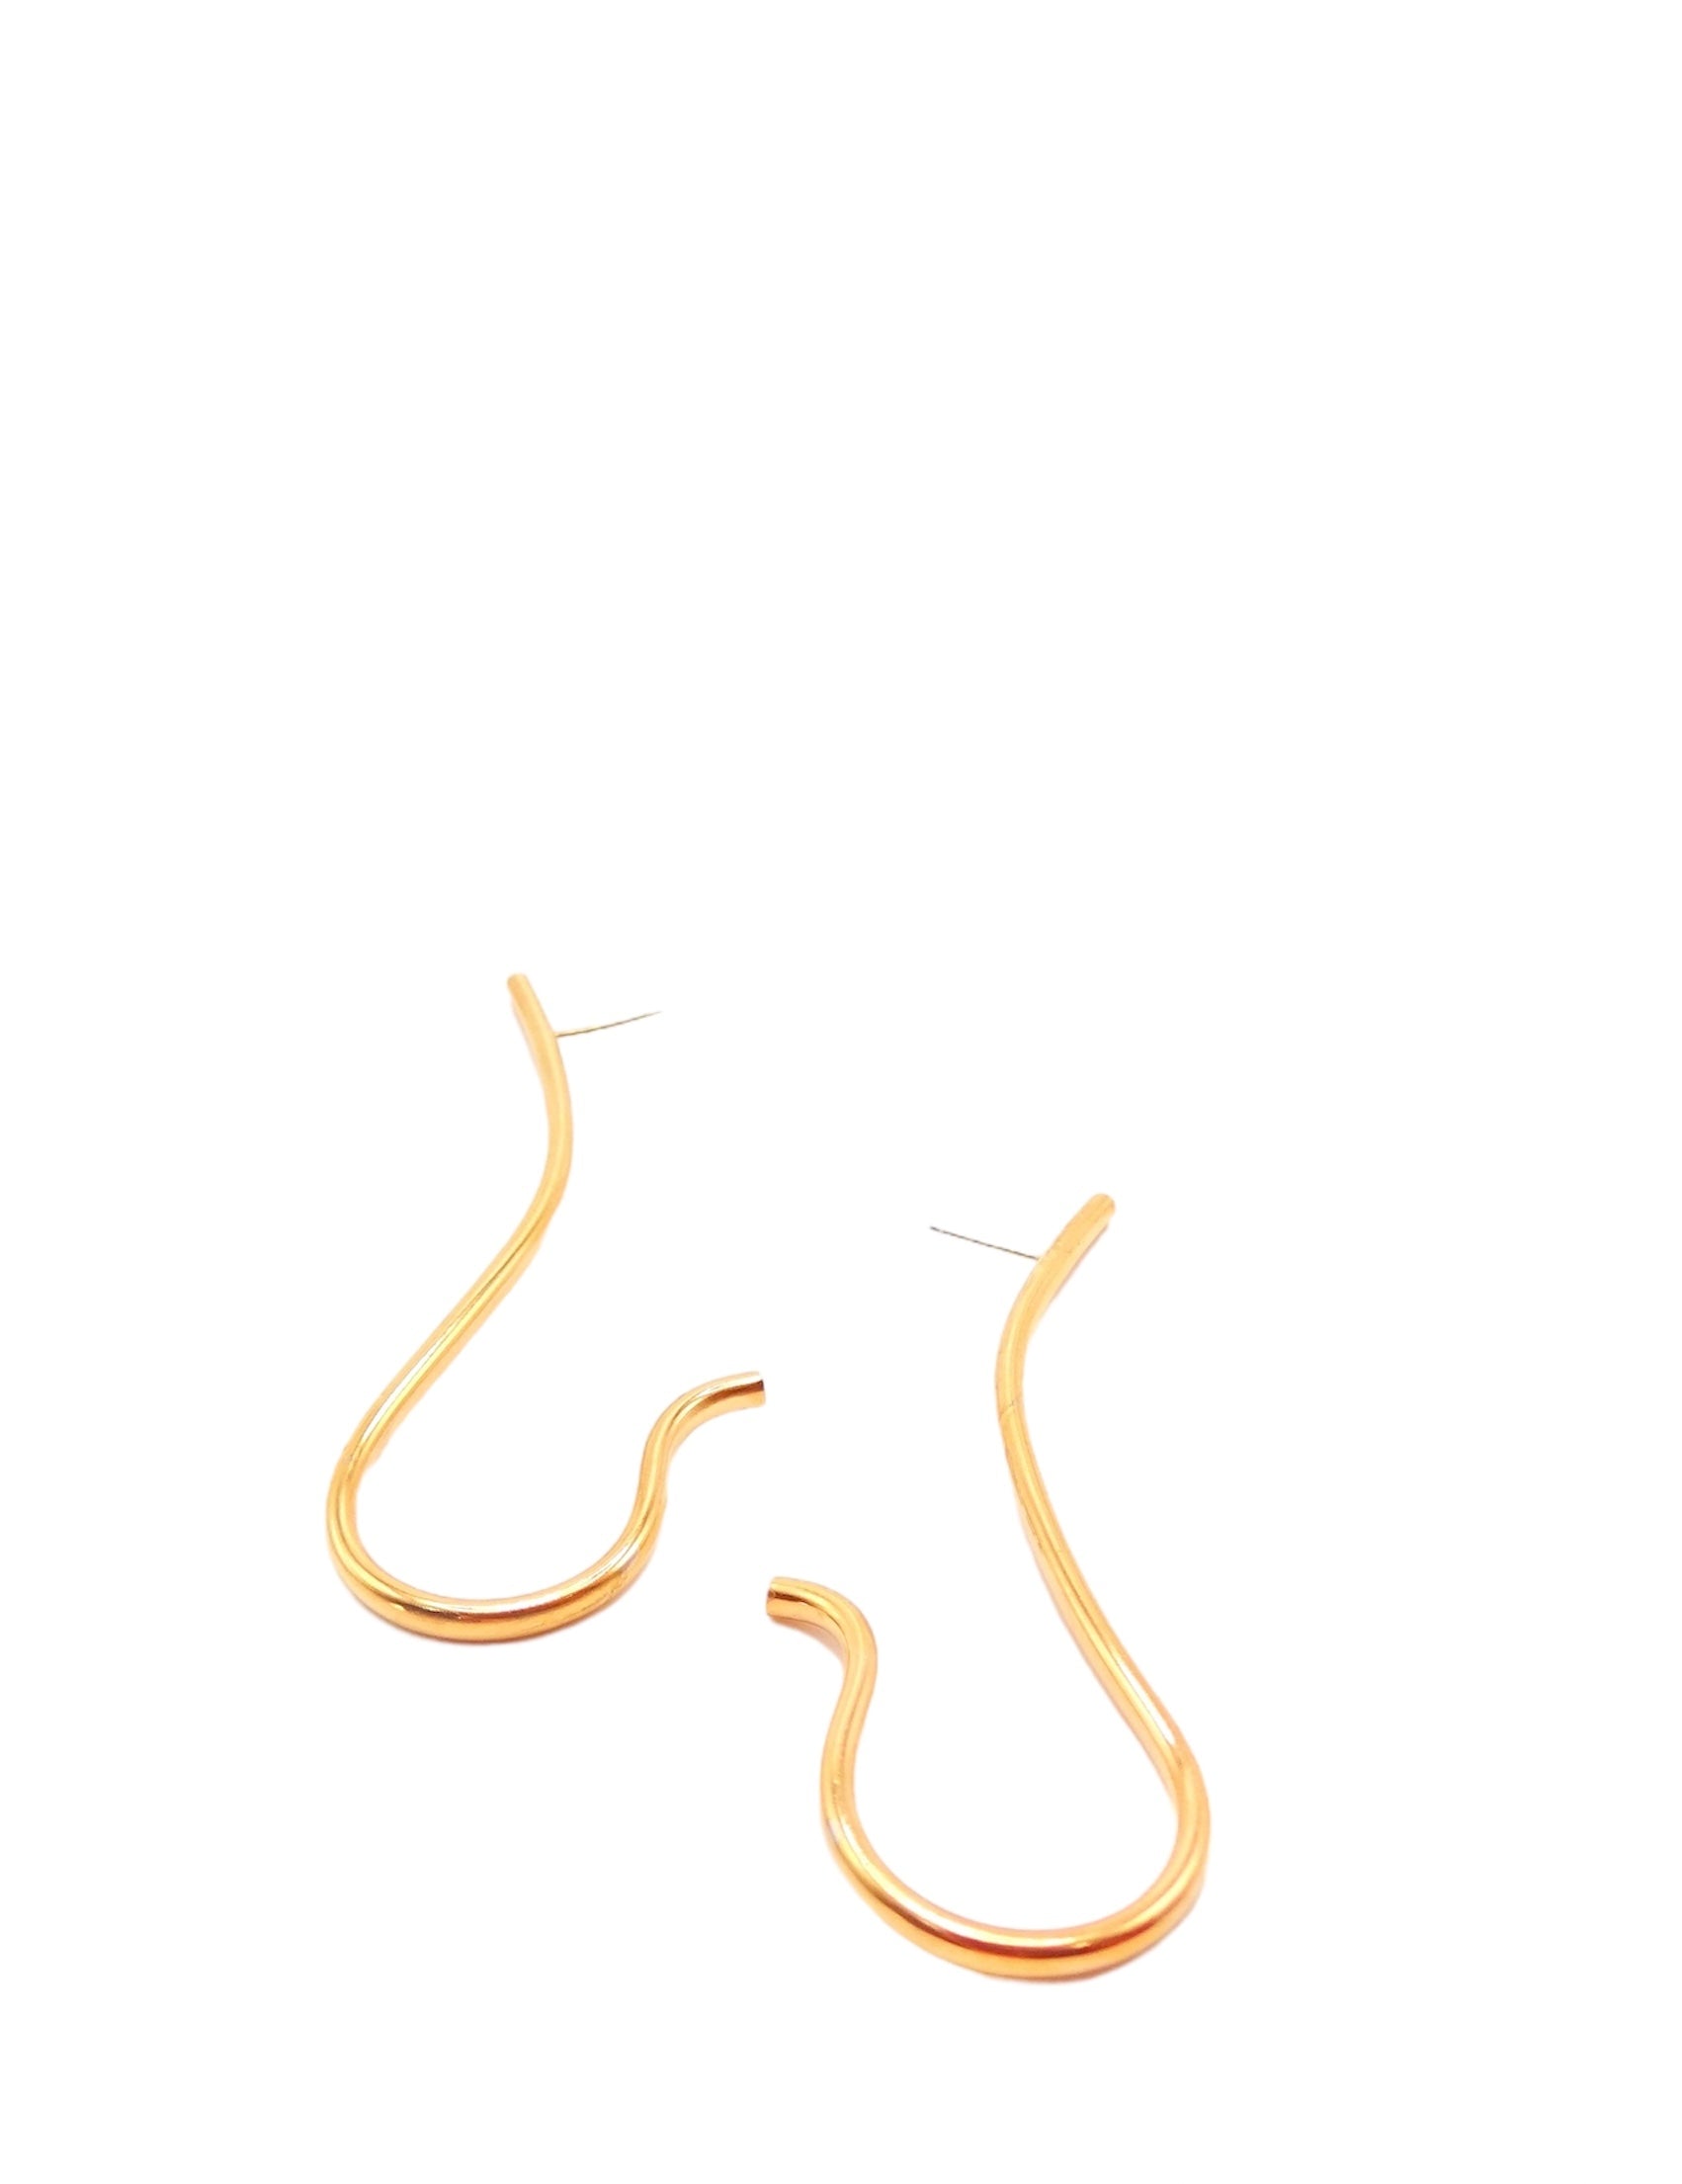 zivanora gold drop earrings